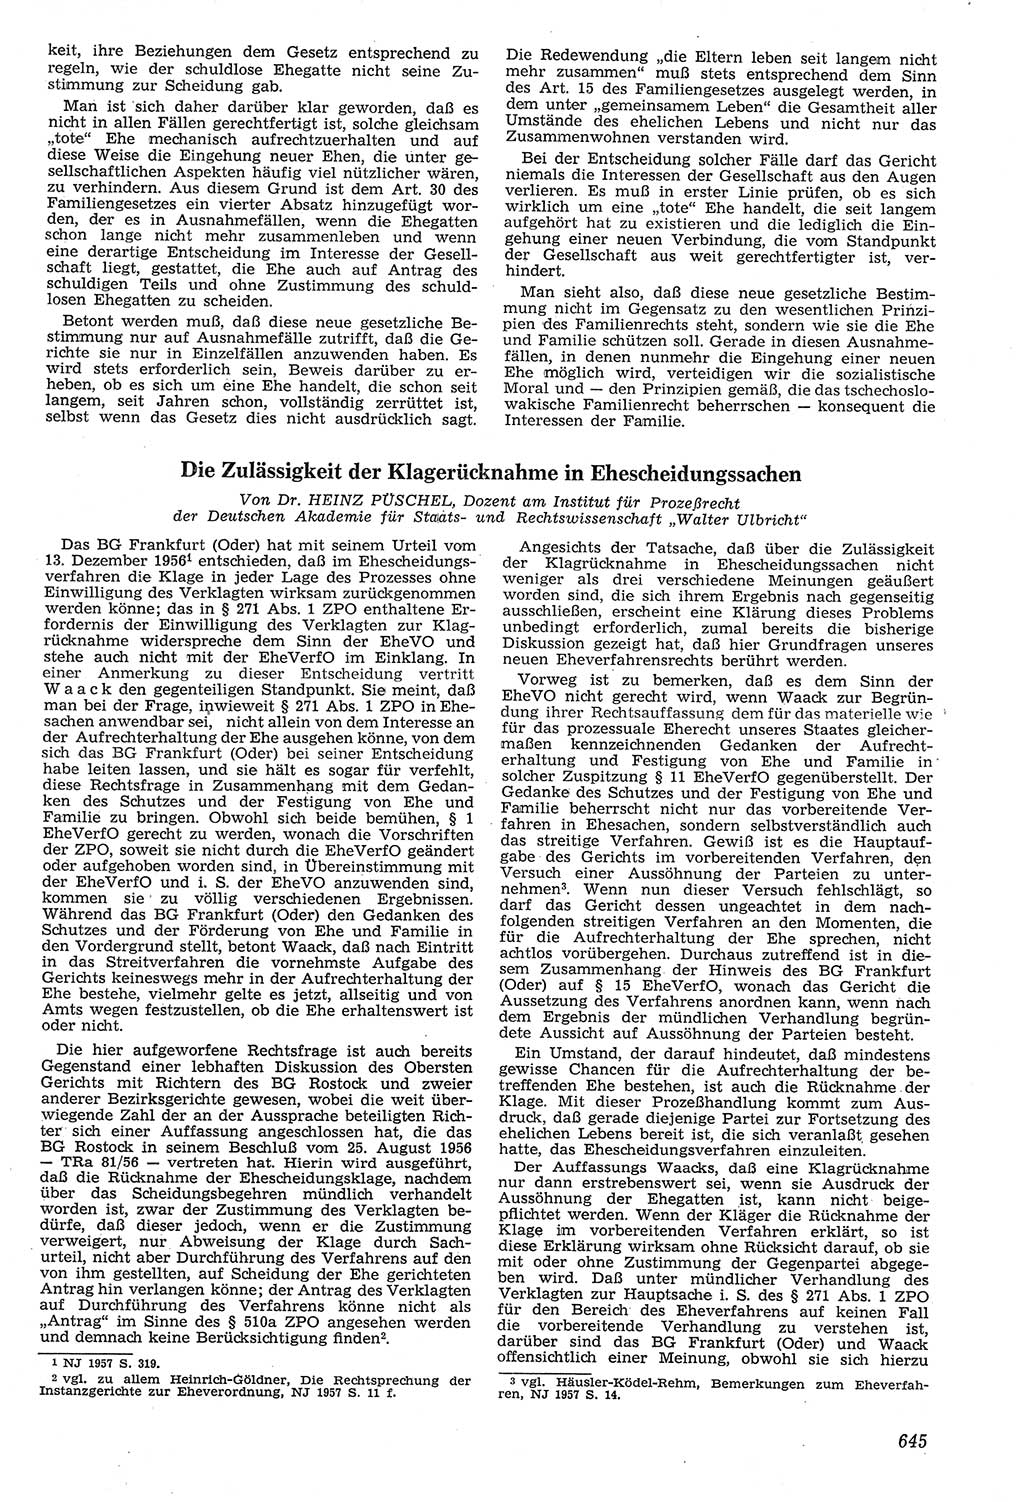 Neue Justiz (NJ), Zeitschrift für Recht und Rechtswissenschaft [Deutsche Demokratische Republik (DDR)], 11. Jahrgang 1957, Seite 645 (NJ DDR 1957, S. 645)